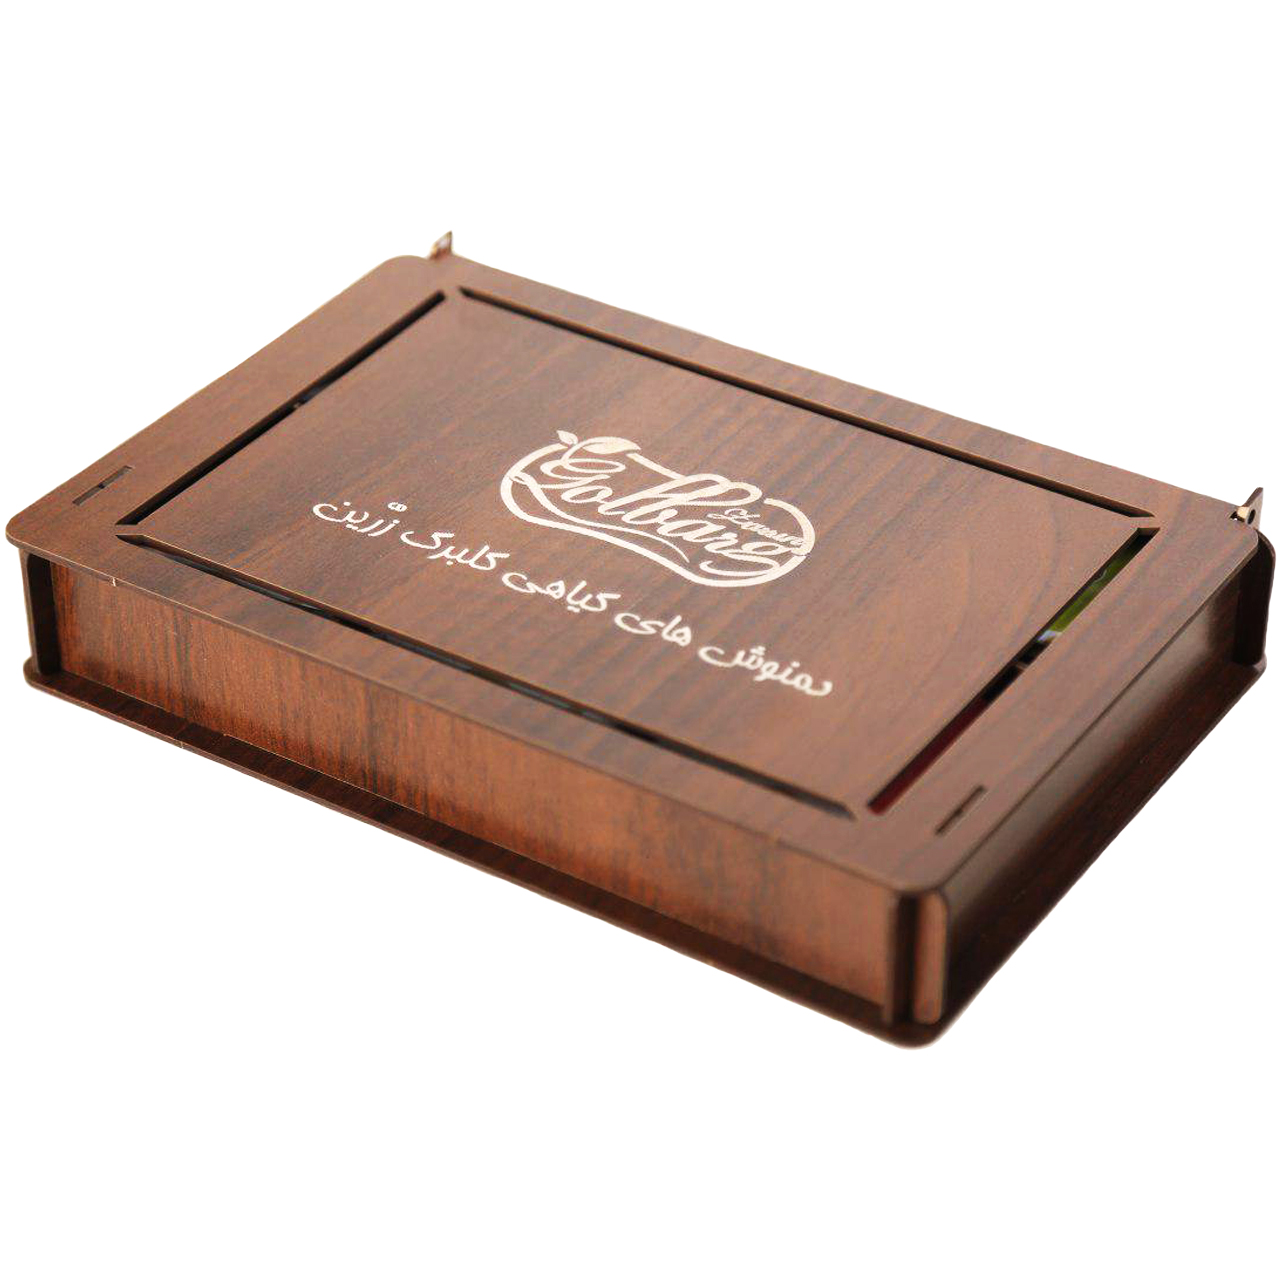 جعبه دمنوش و چای کیسه ای گلبرگ زرین مدل Classic بسته 36 عددی مناسب برای پذیرایی و هدیه